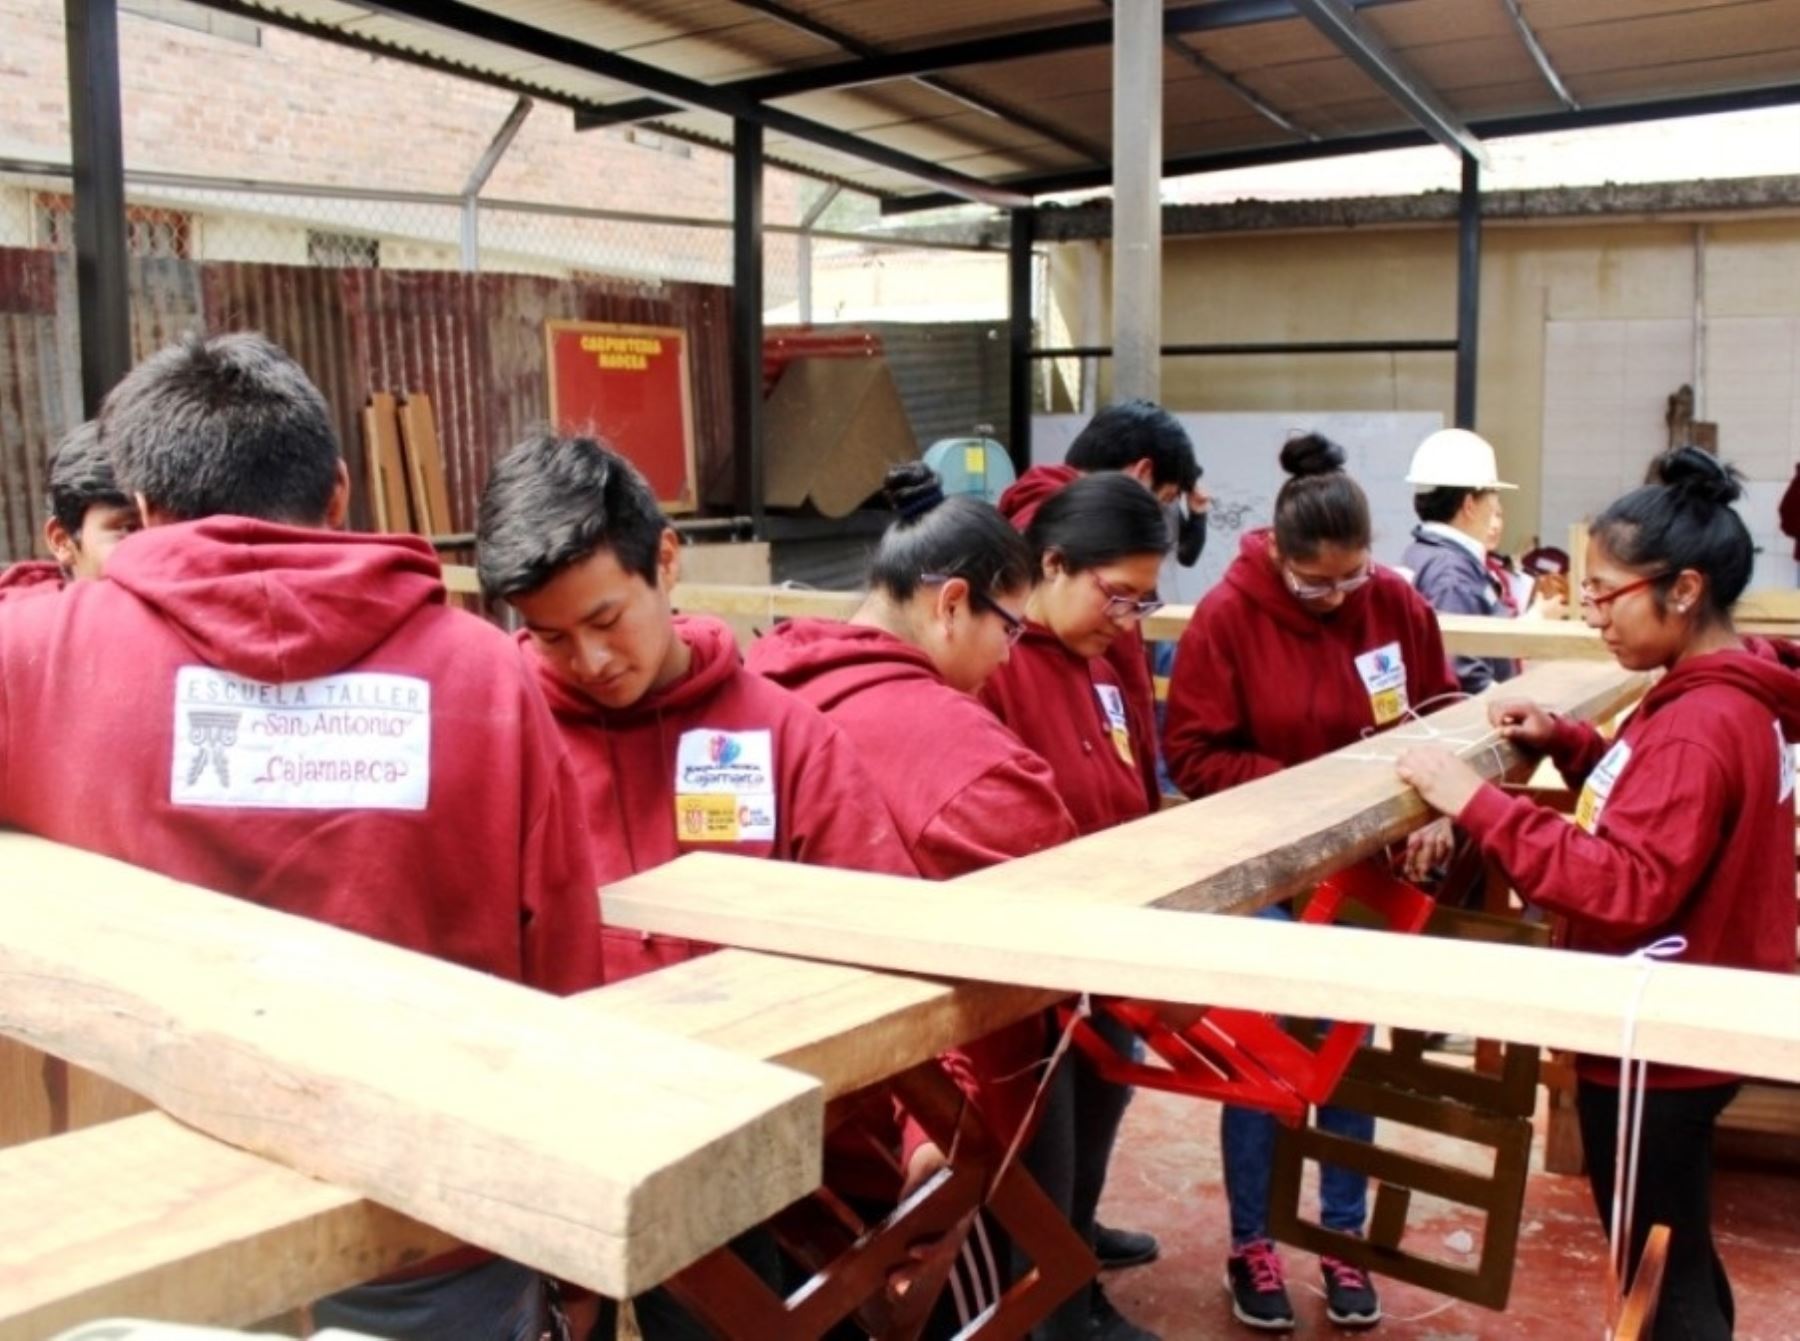 PNUD y ORU Fogar otorgaron el premio Buenas Prácticas Regionales a la escuela taller San Antonio de Cajamarca por su trabajo por el desarrollo e inclusión social de jóvenes en situación de pobreza. ANDINA/Difusión